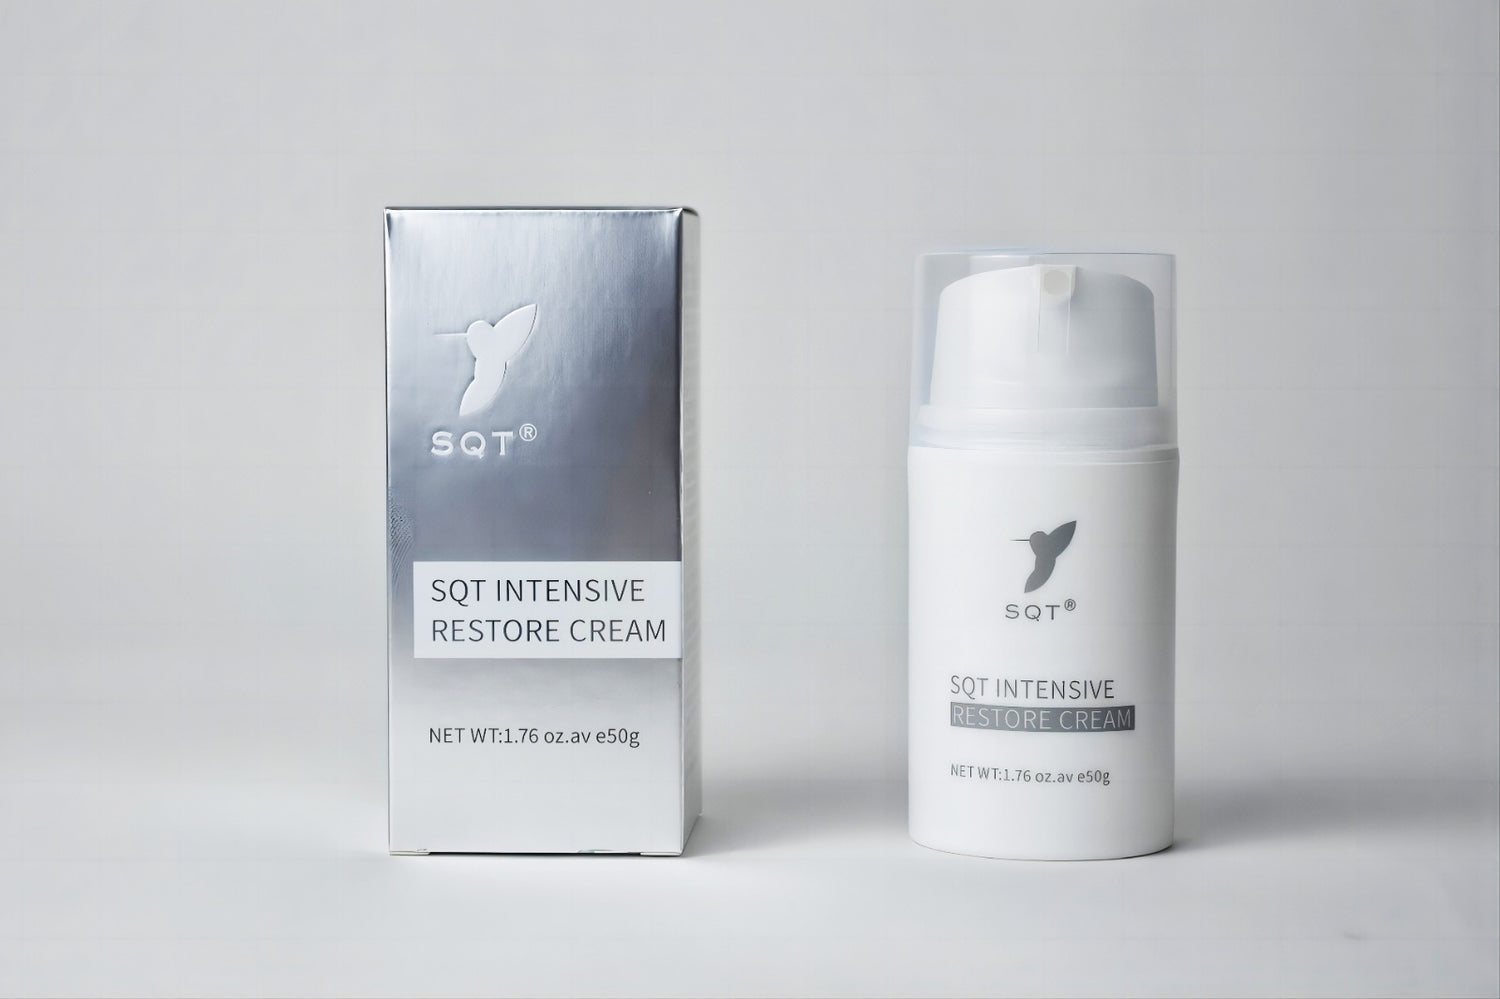 SQT Intensive Restore Cream